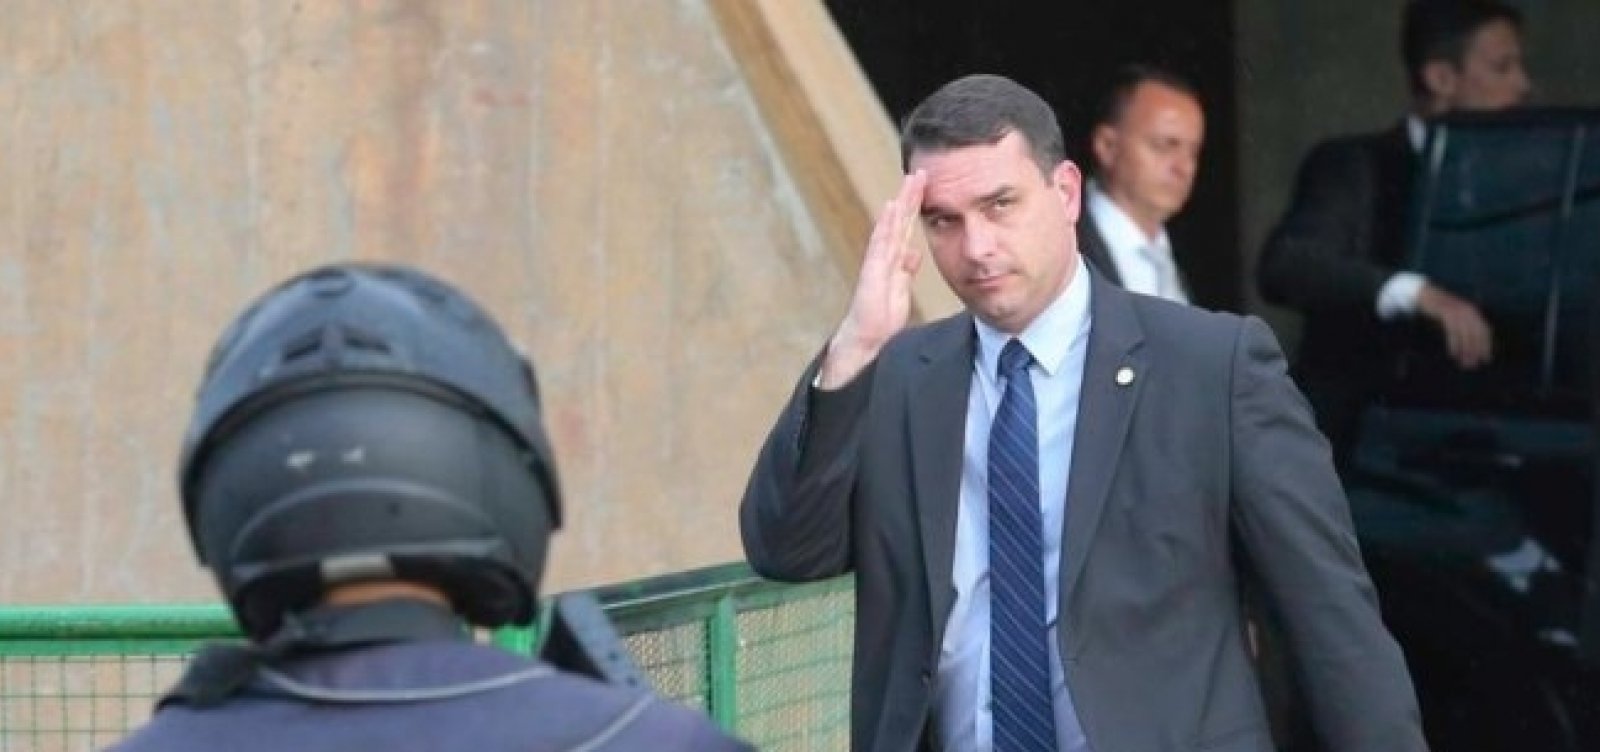 Ex-assessora de gabinete de Flávio Bolsonaro foi paga com verba pública, diz jornal